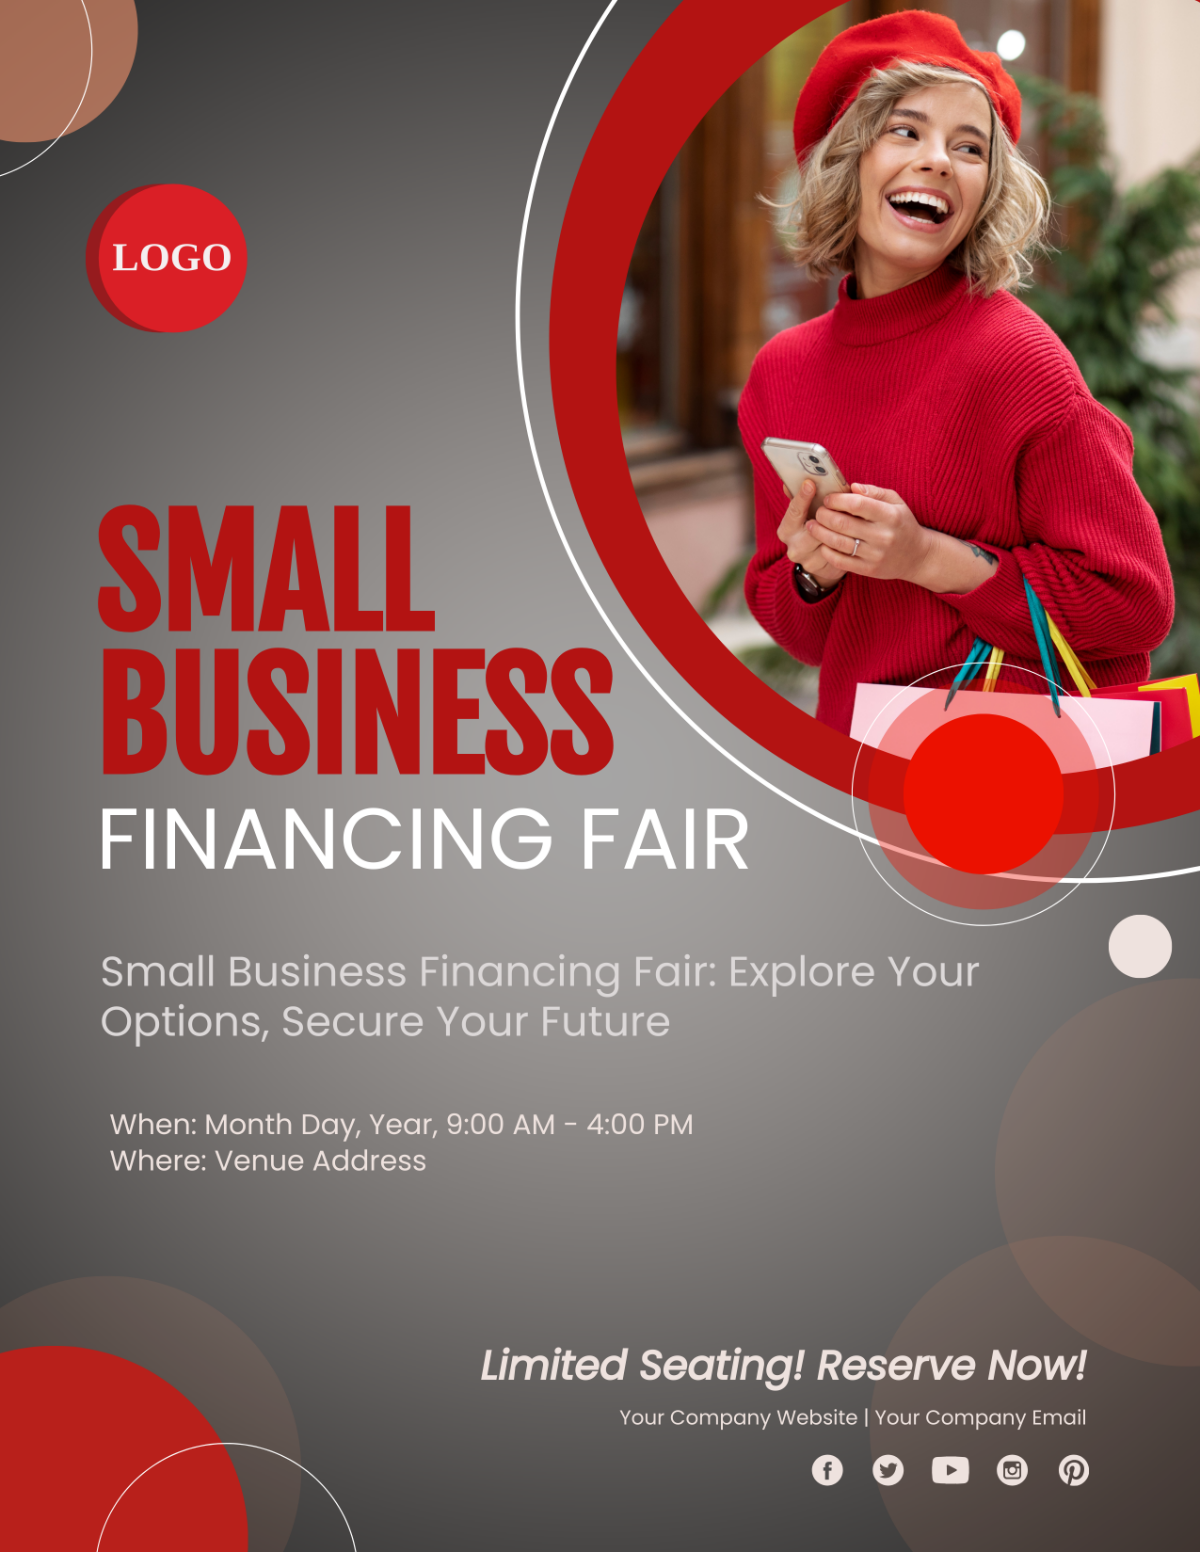 Small Business Financing Fair Flyer Template